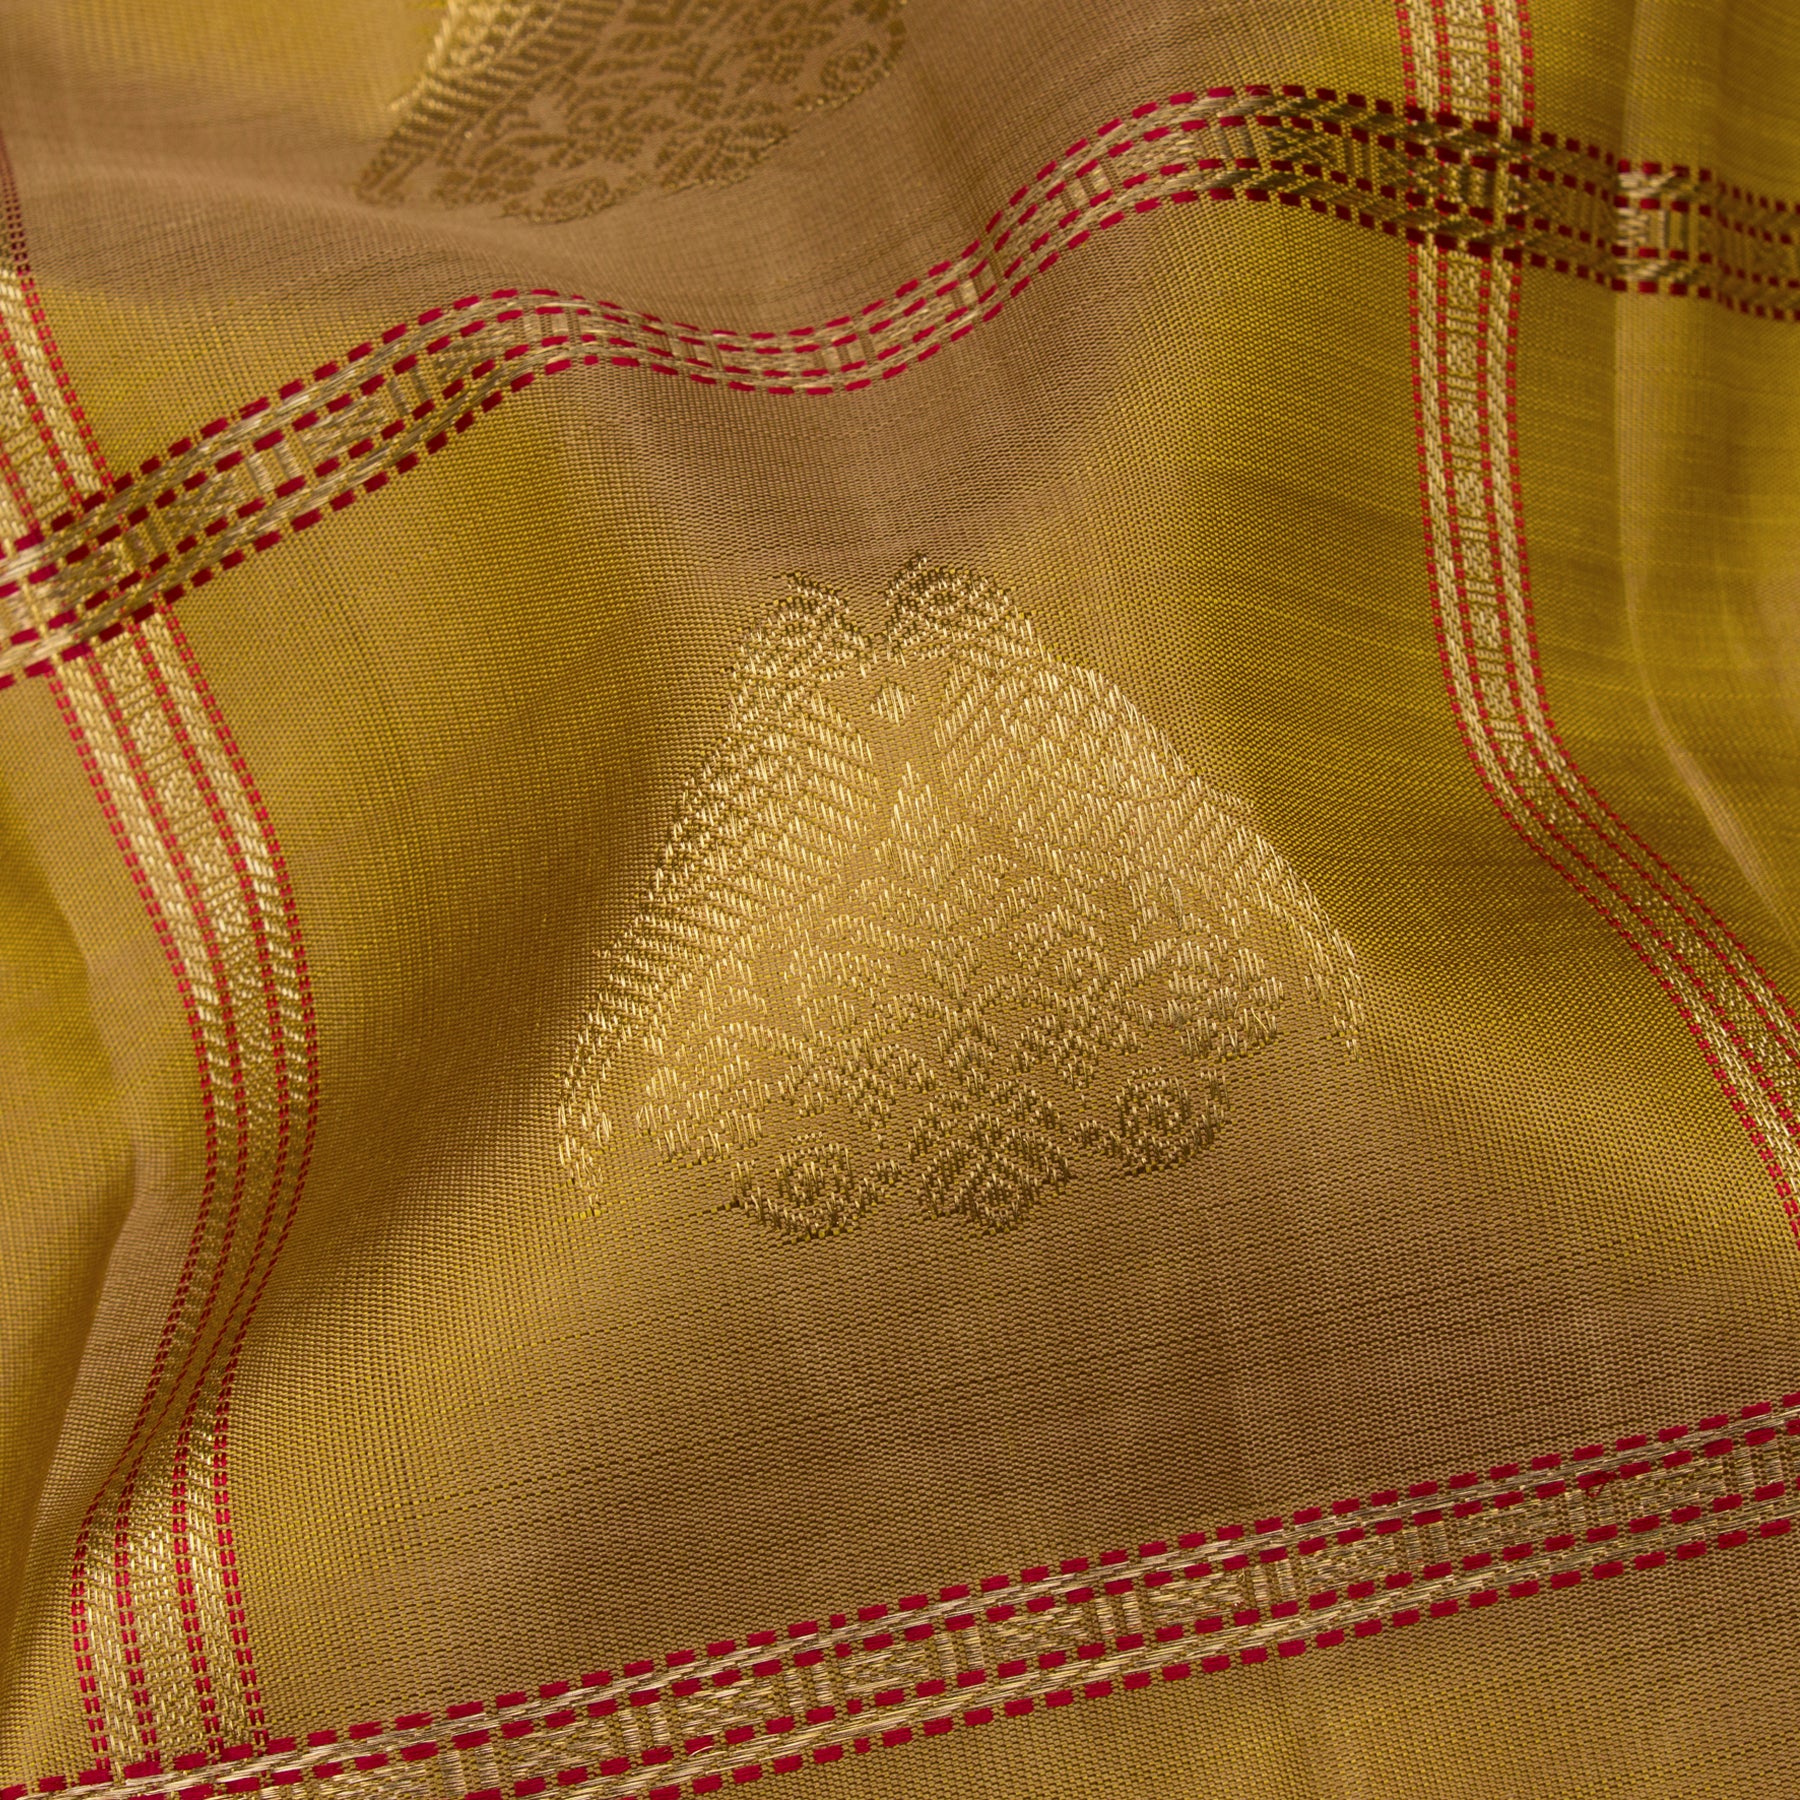 Kanakavalli Kanjivaram Silk Sari 23-040-HS001-14119 - Fabric View